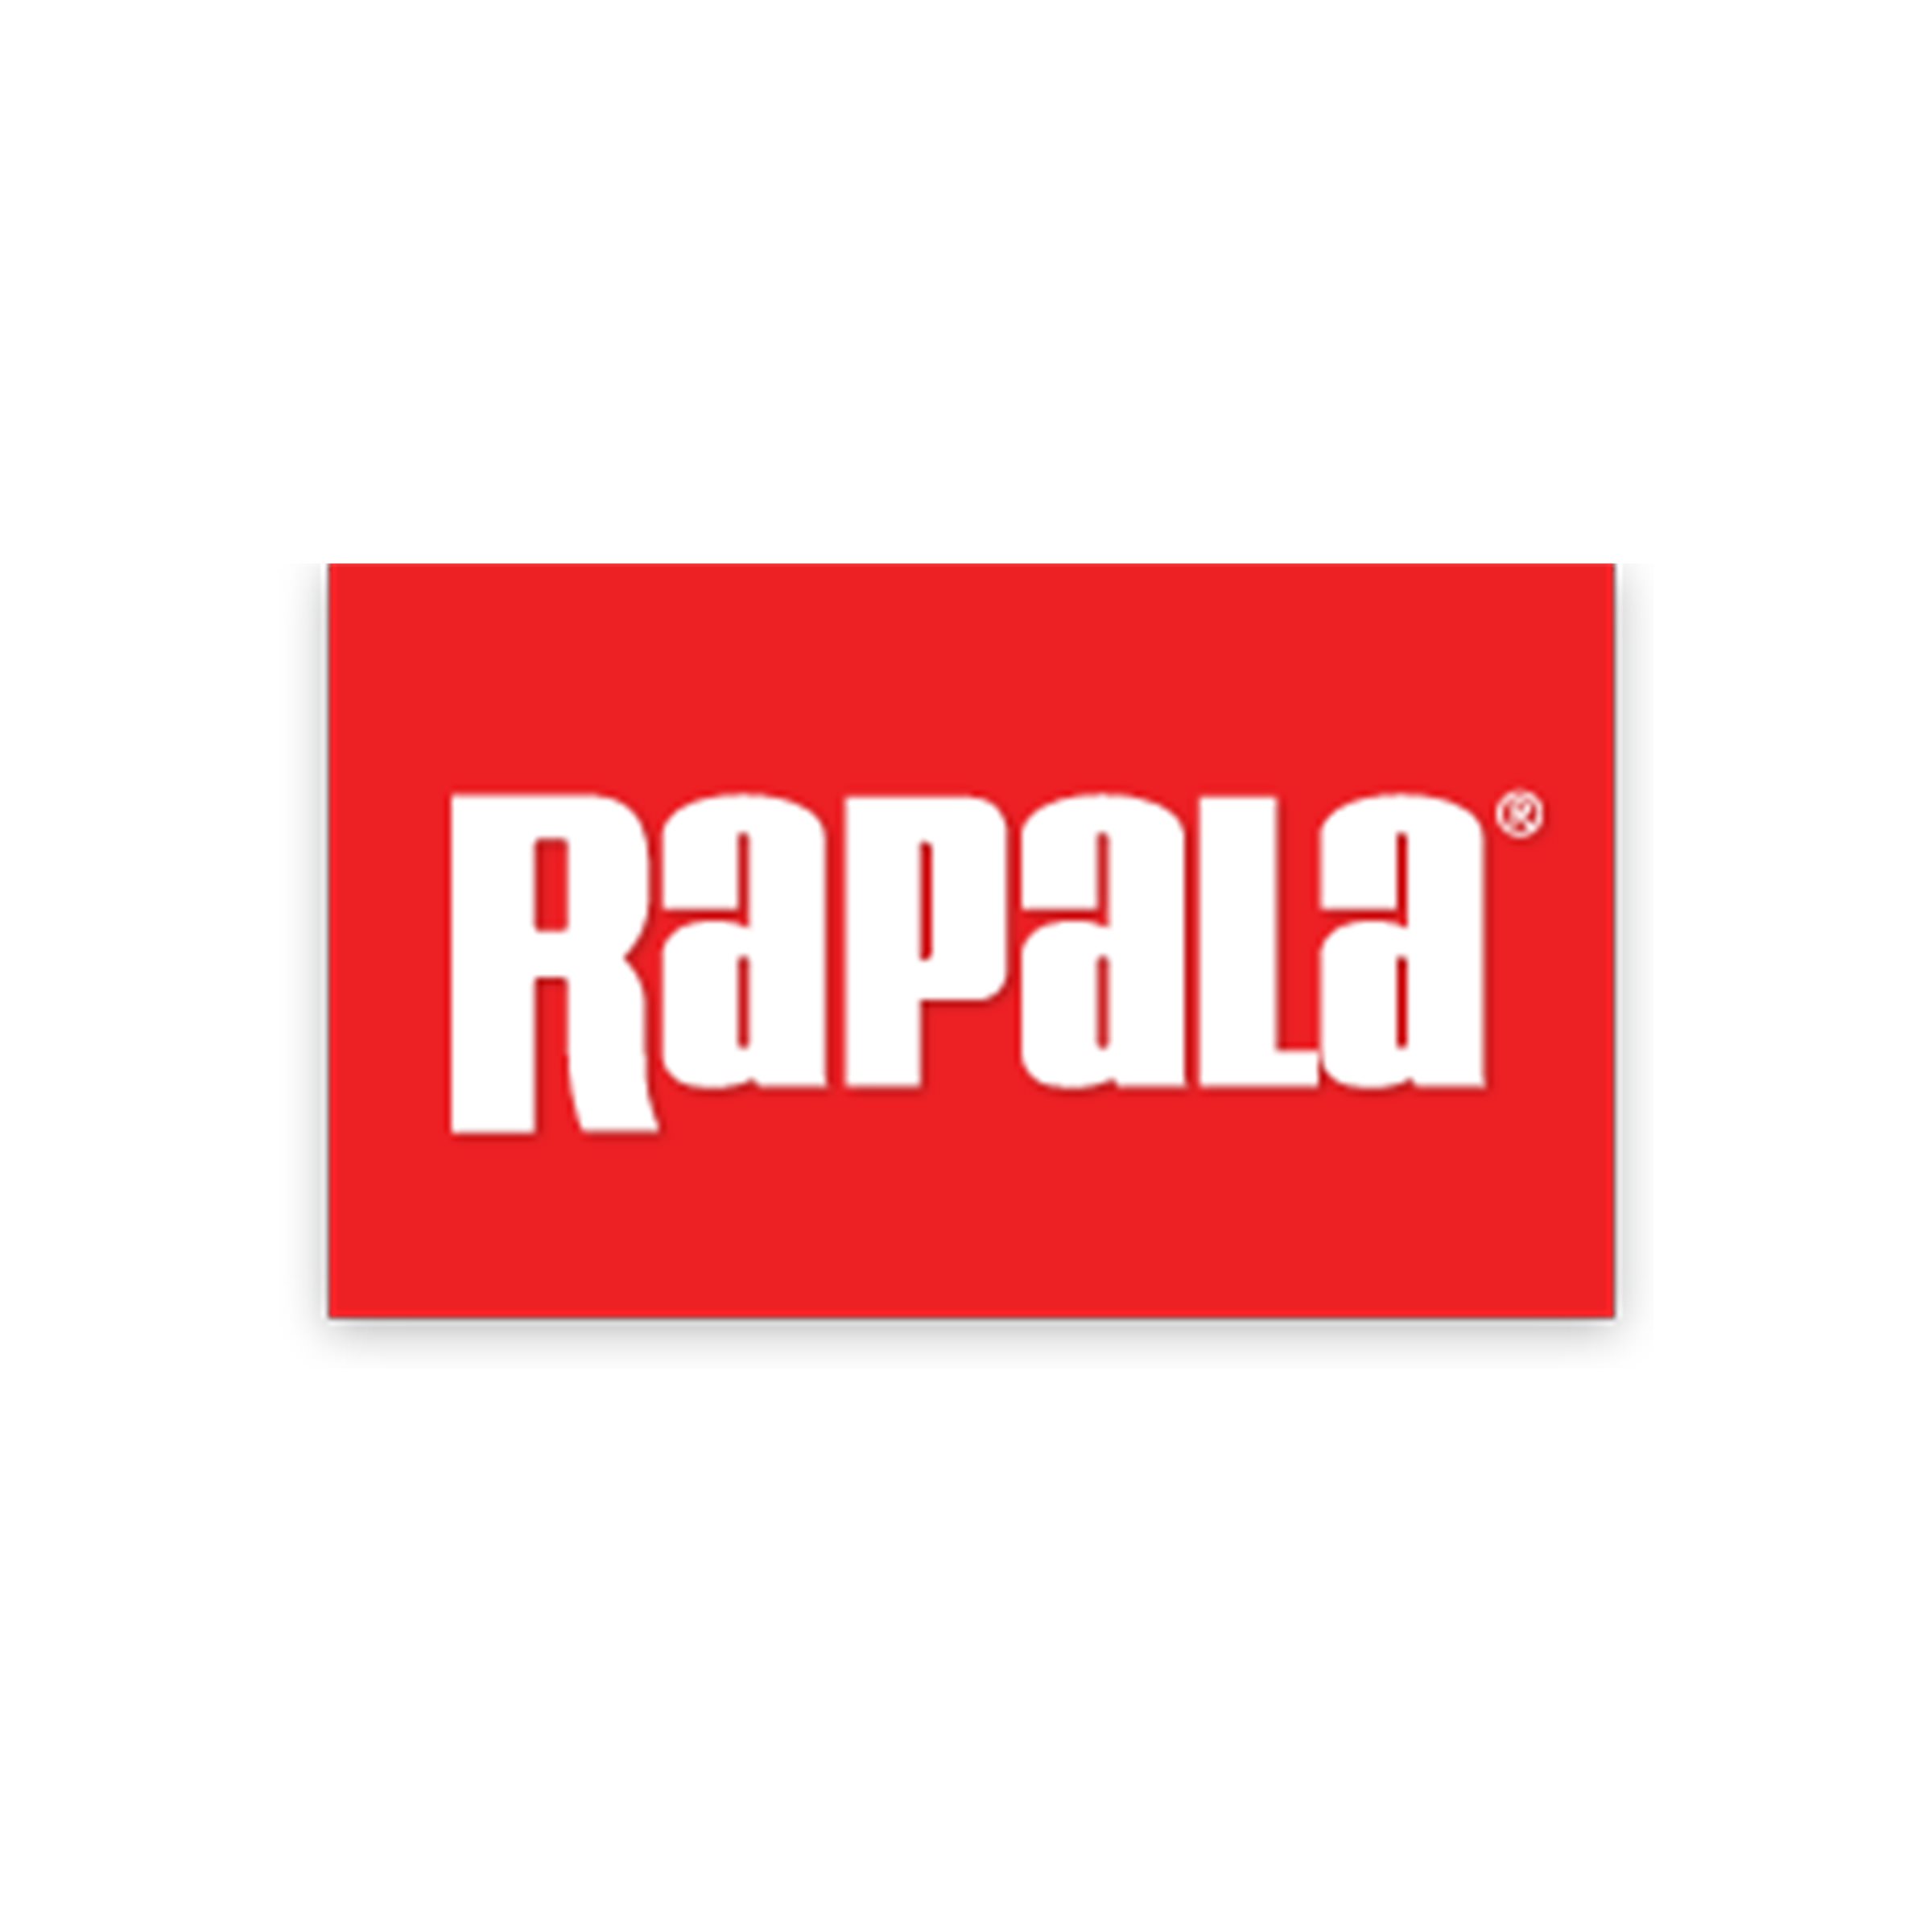 A_Rapala